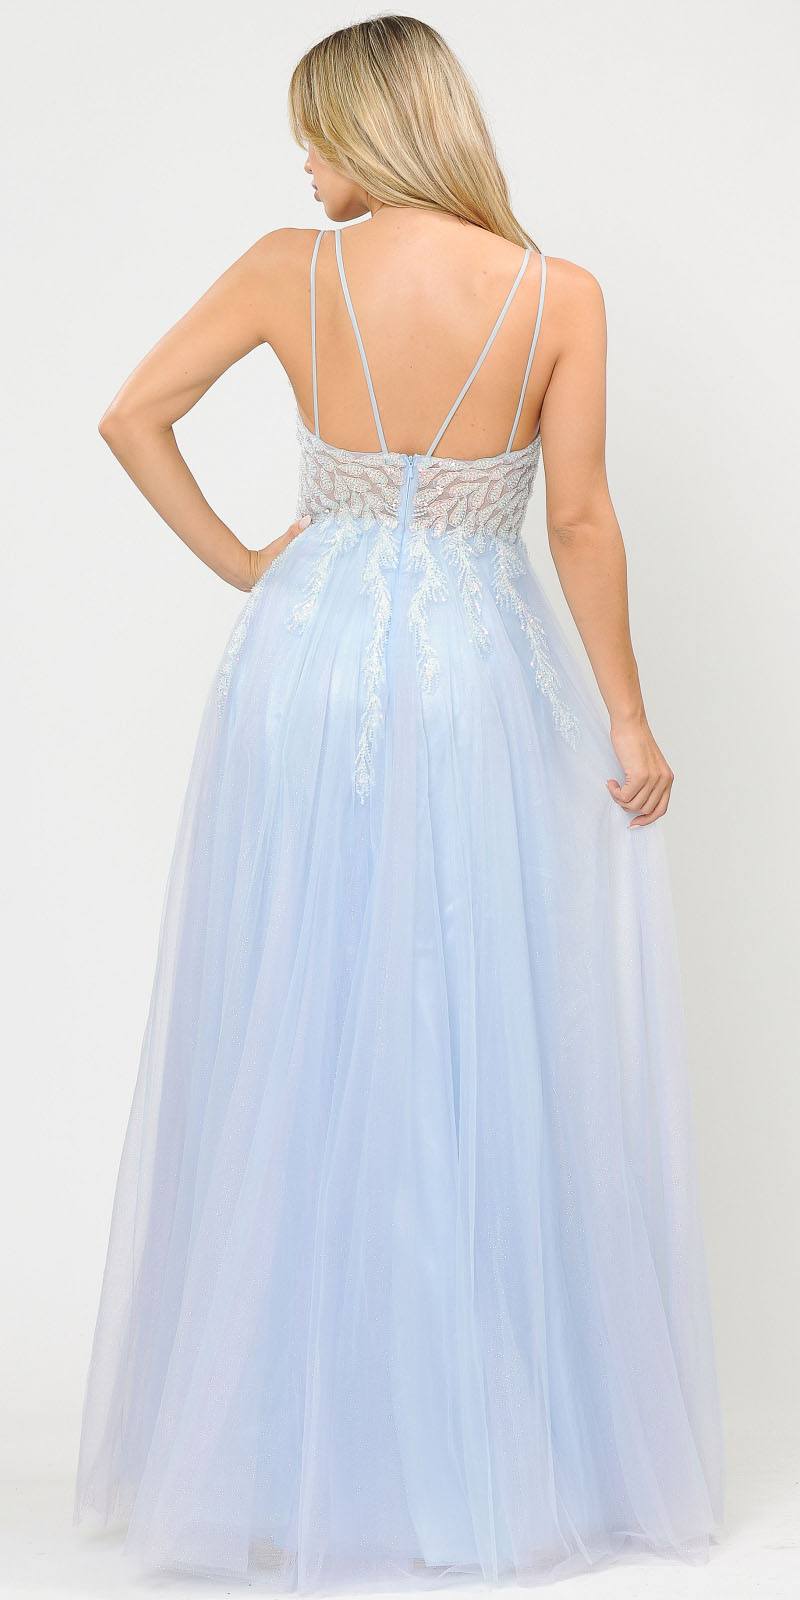 Poly USA 8718 Blue Embellished Bodice Long Prom Dress